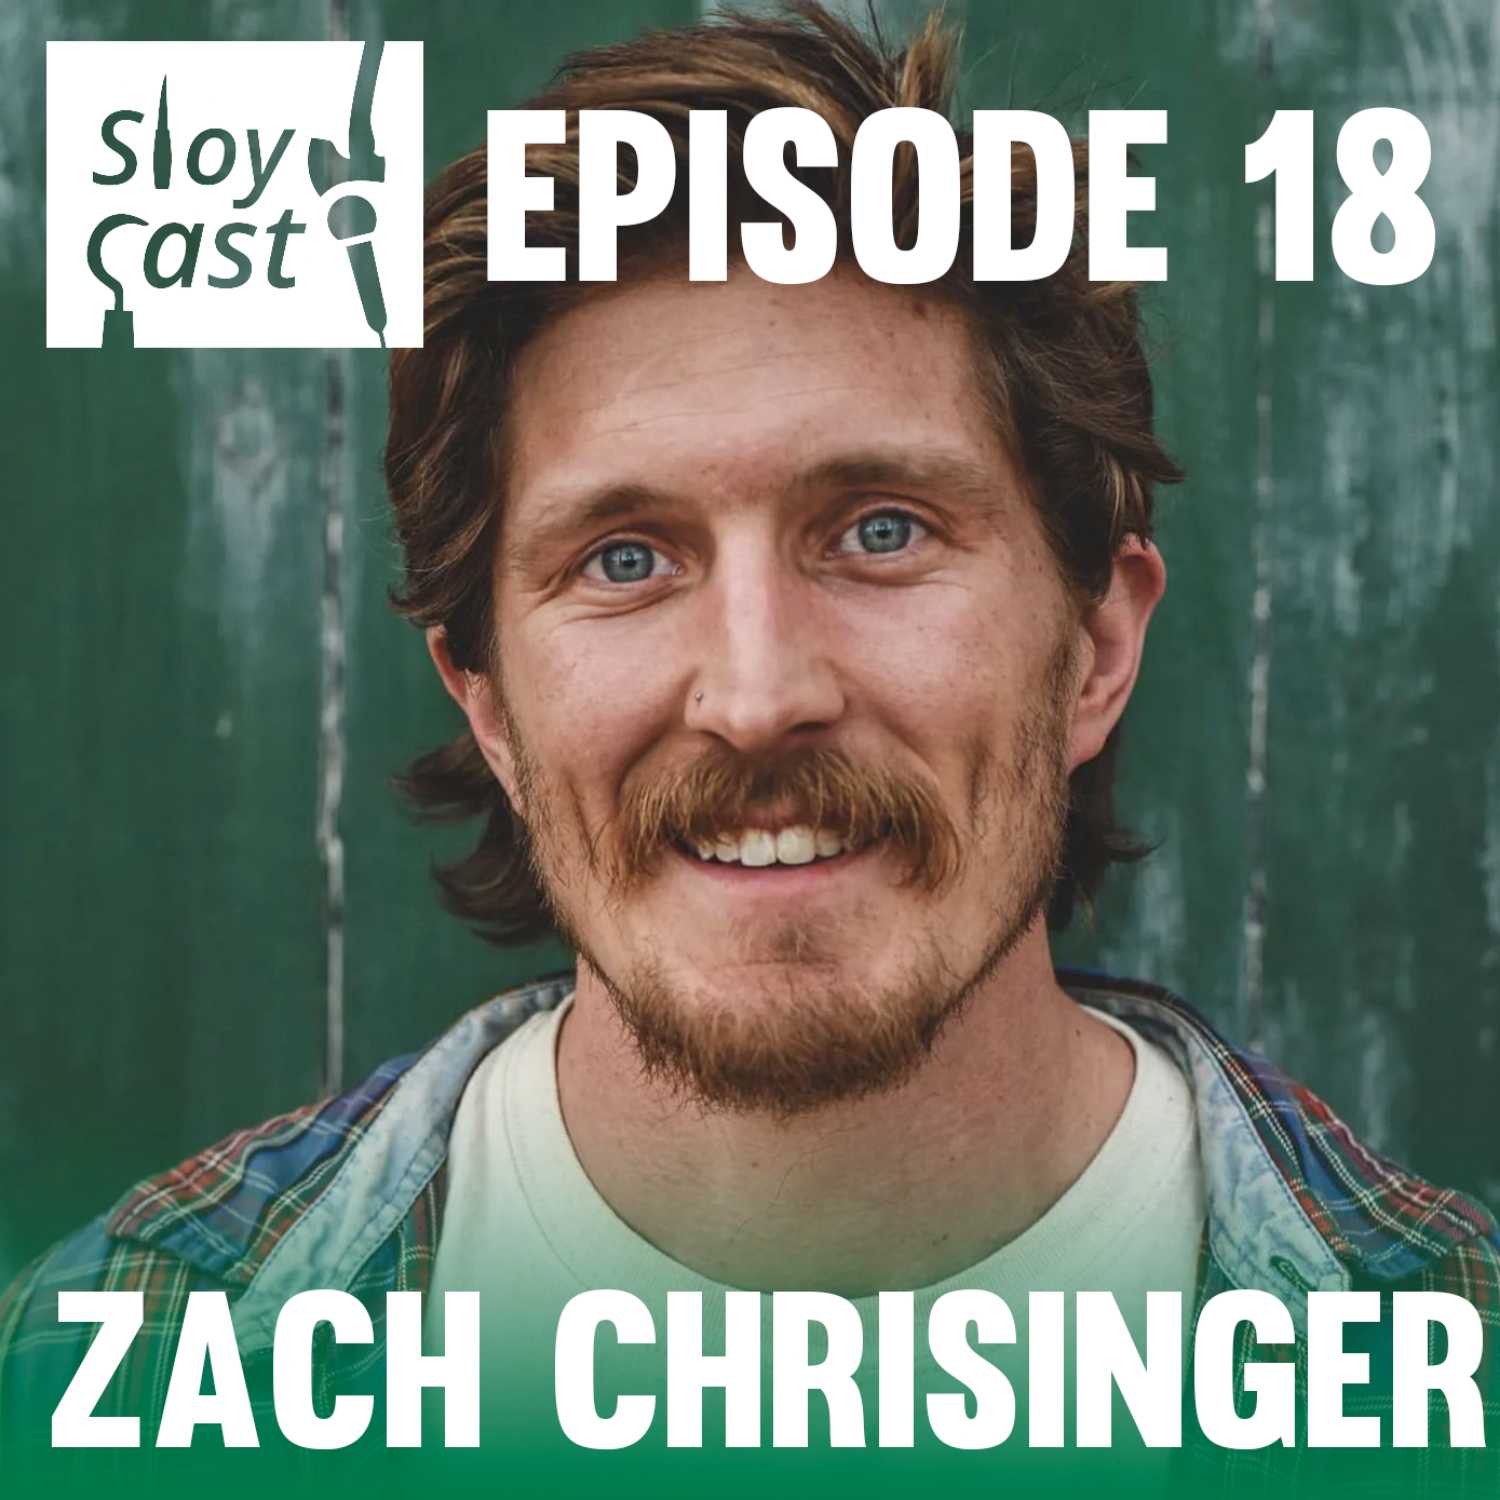 Episode 18 - Zach Chrisinger